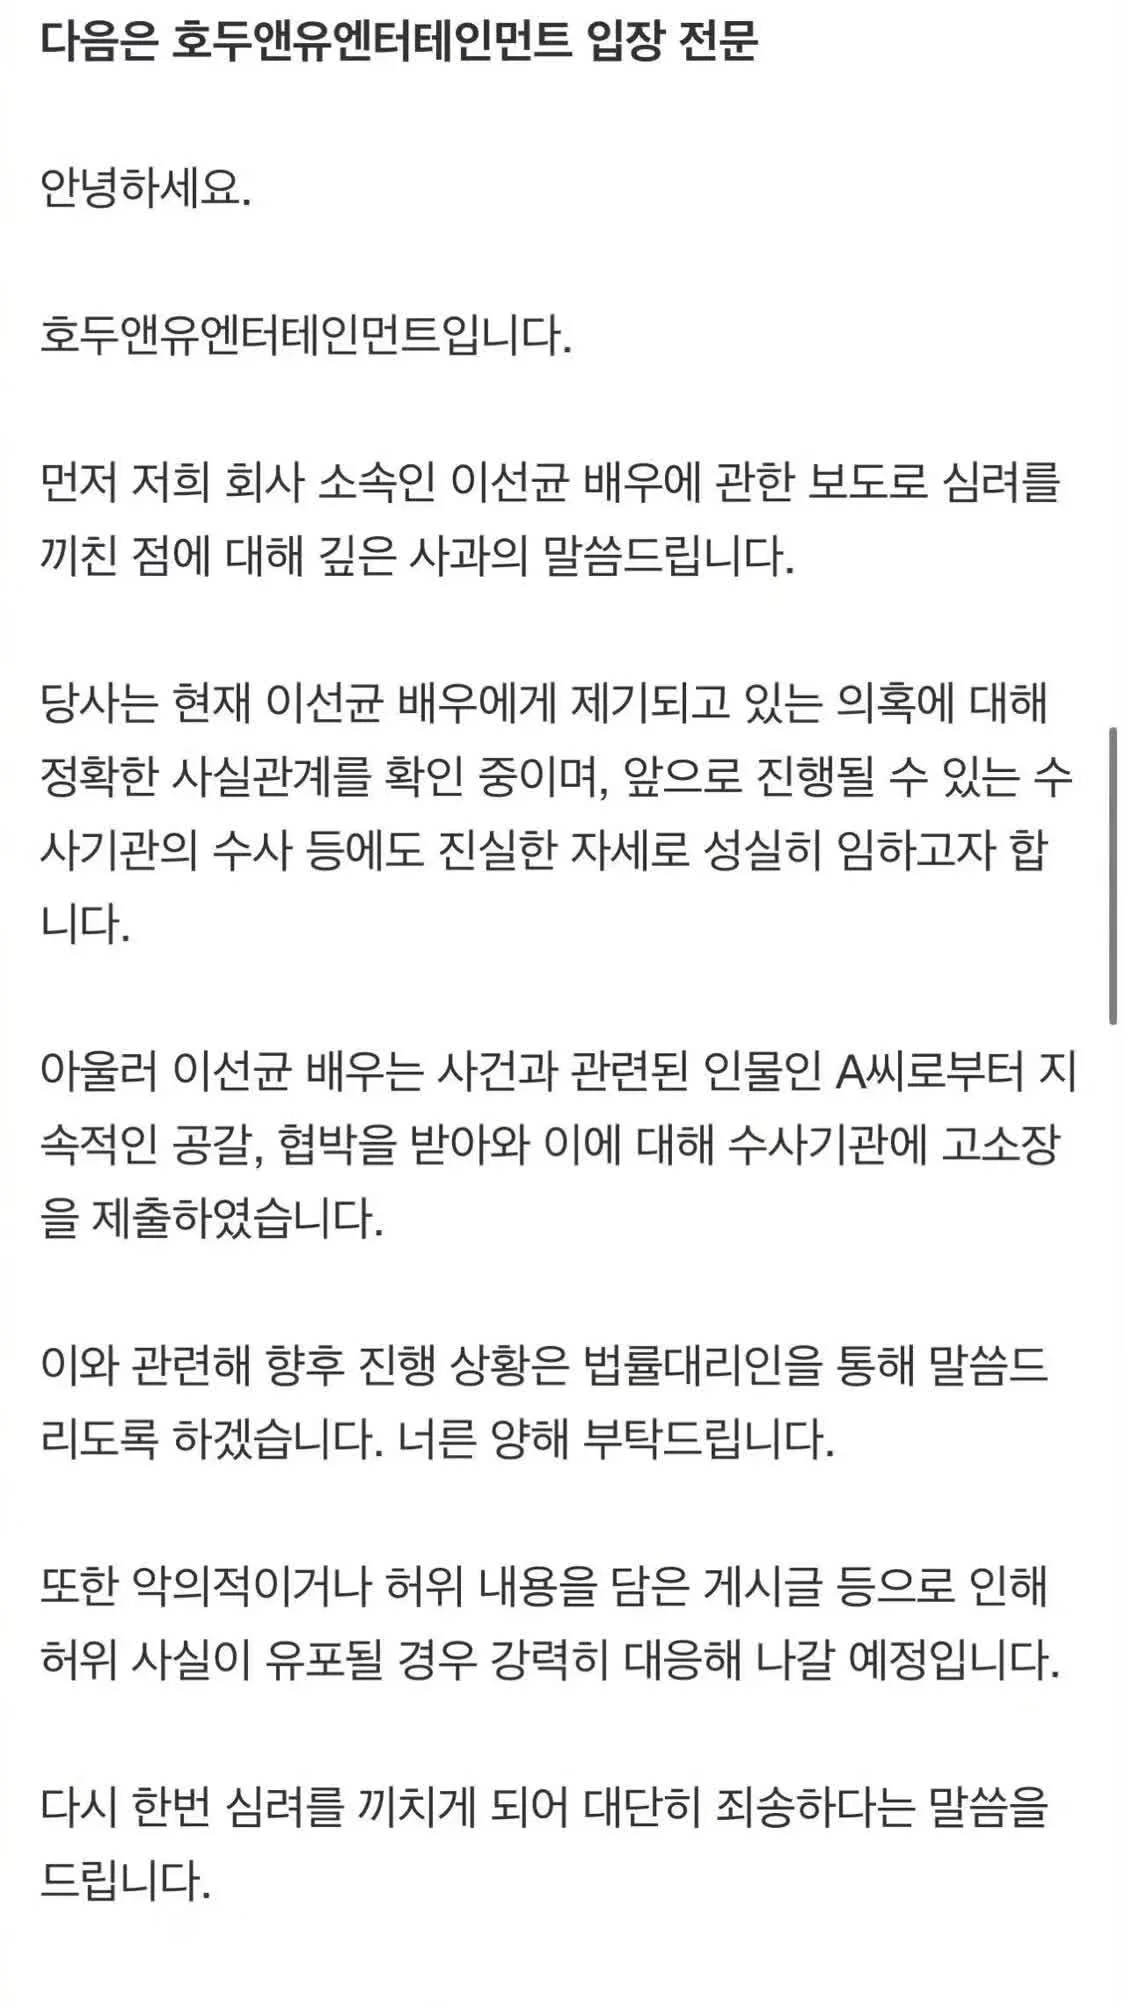 韩国演员李善均因吸毒事件将被传唤调查 警方申请对其进行毛发检测